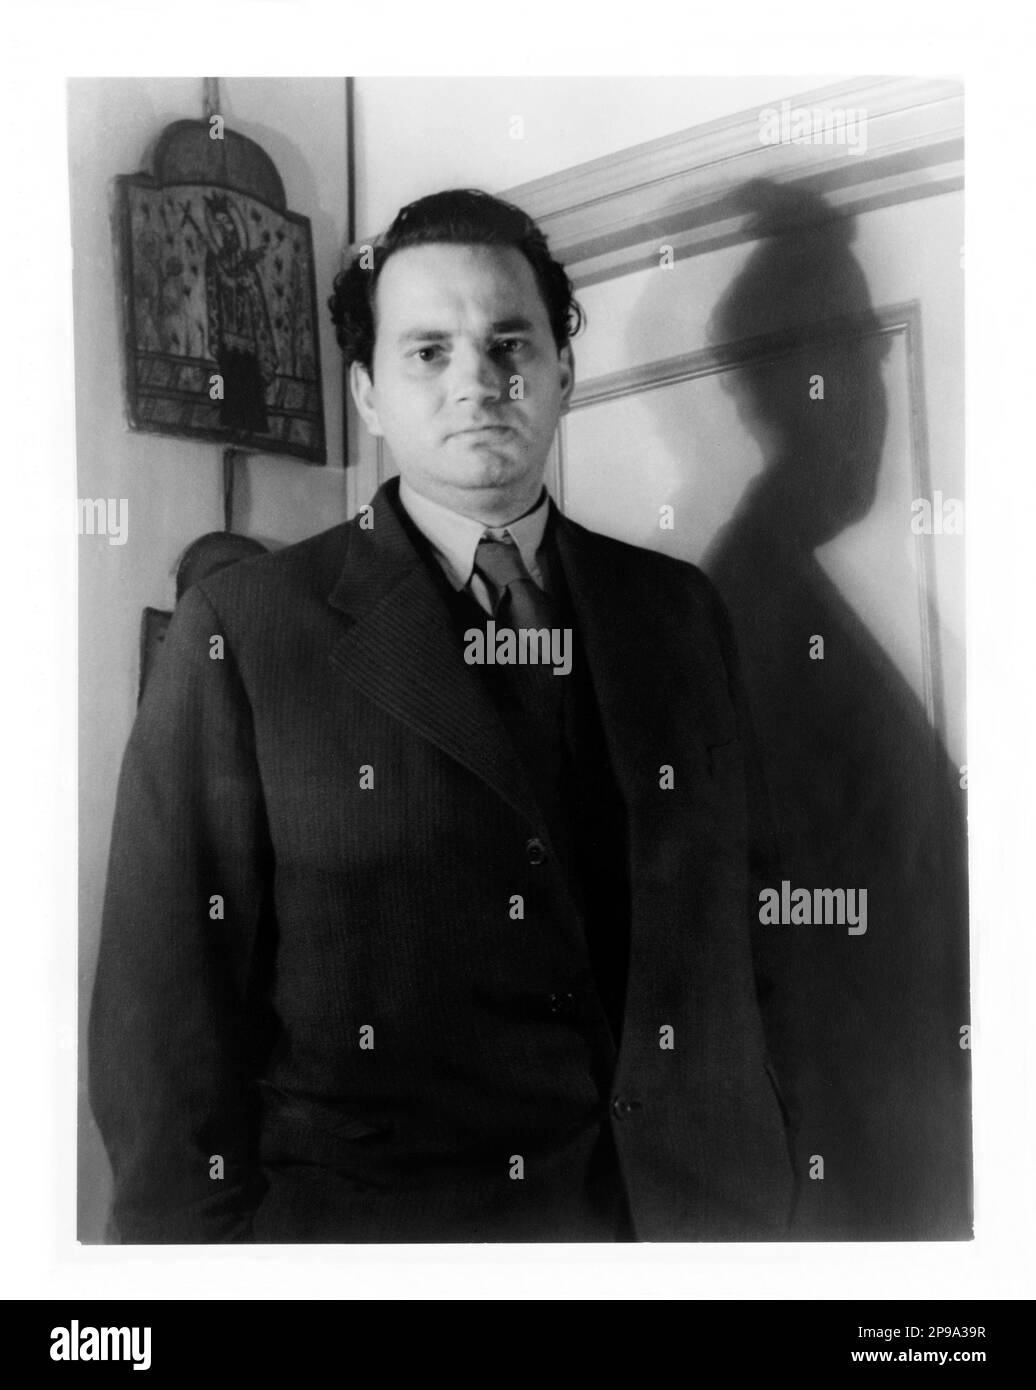 1937 : Porträt des amerikanischen Schriftstellers THOMAS WOLFE ( 1900 - 1938 ) . Foto von Carl Van Vechten - LETTERATO - SCRITTORE - LETTERATURA - Literatur - PORTRAIT - RITRATTO - Kragen - colletto - Krawatte - Cravatta ---- NICHT FÜR PUBBLICITARY -- NICHT PER USO PUBBLICITARIO -- NICHT FÜR GADGETS ------- - Archivio GBB Stockfoto